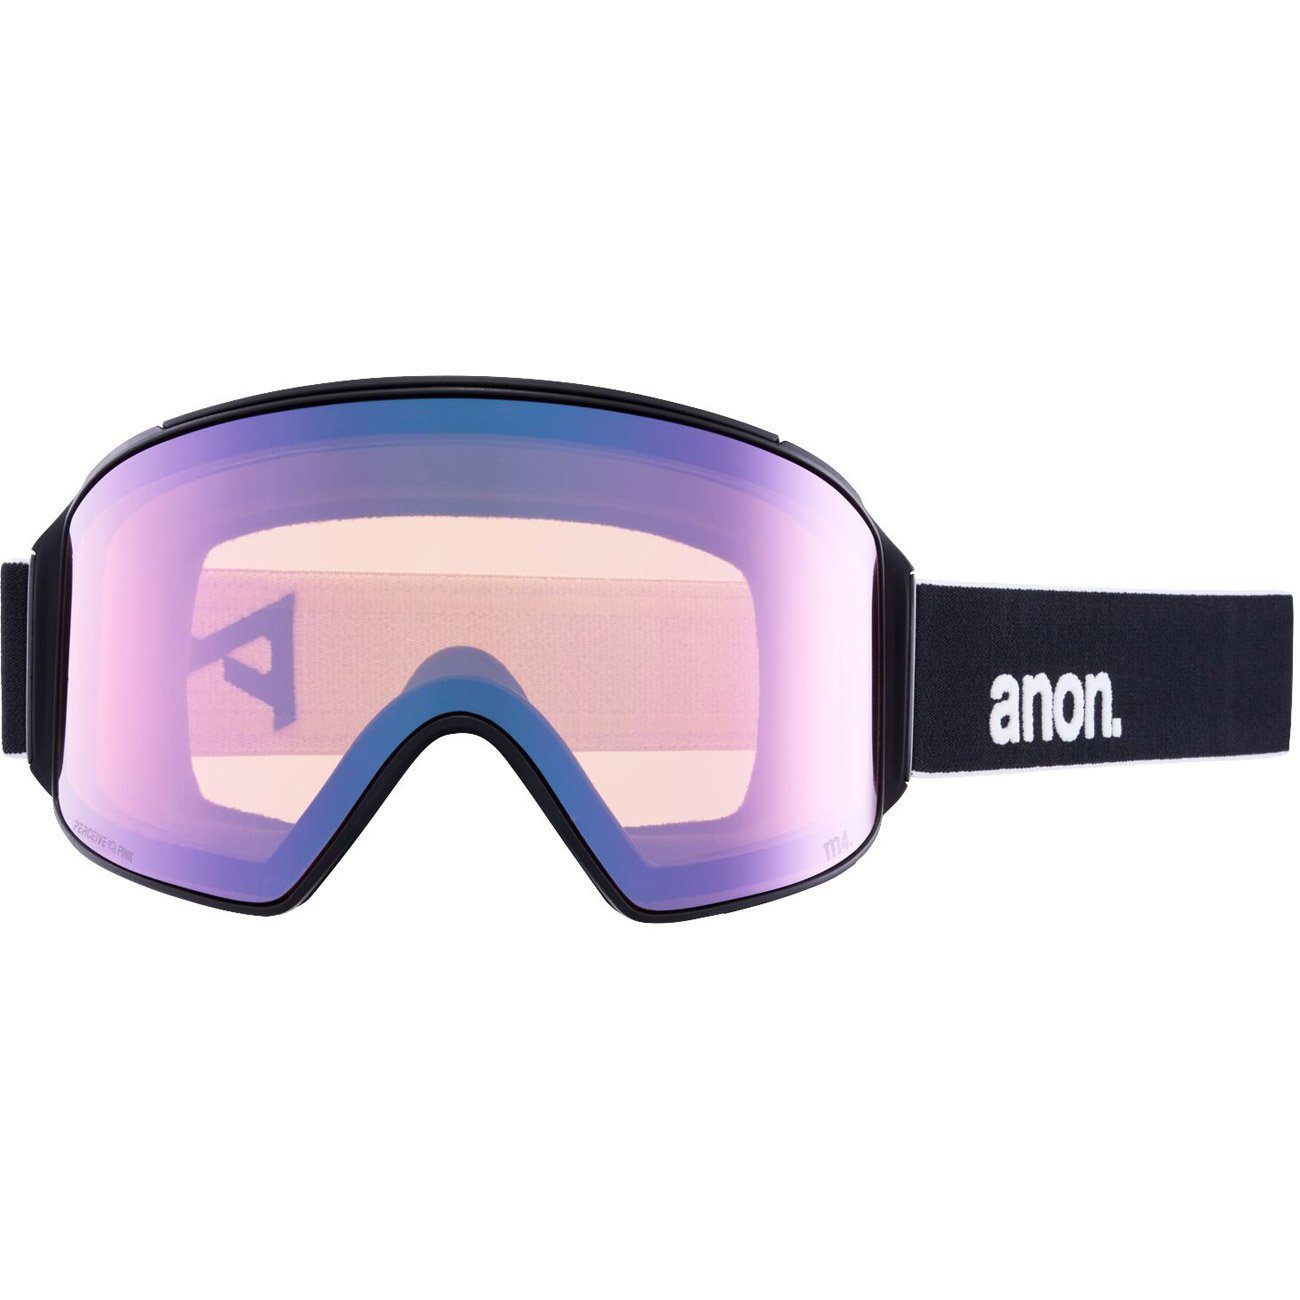 Snowboardbrille, M4 blue vrbl black/prcv Anon CYLINDRICAL